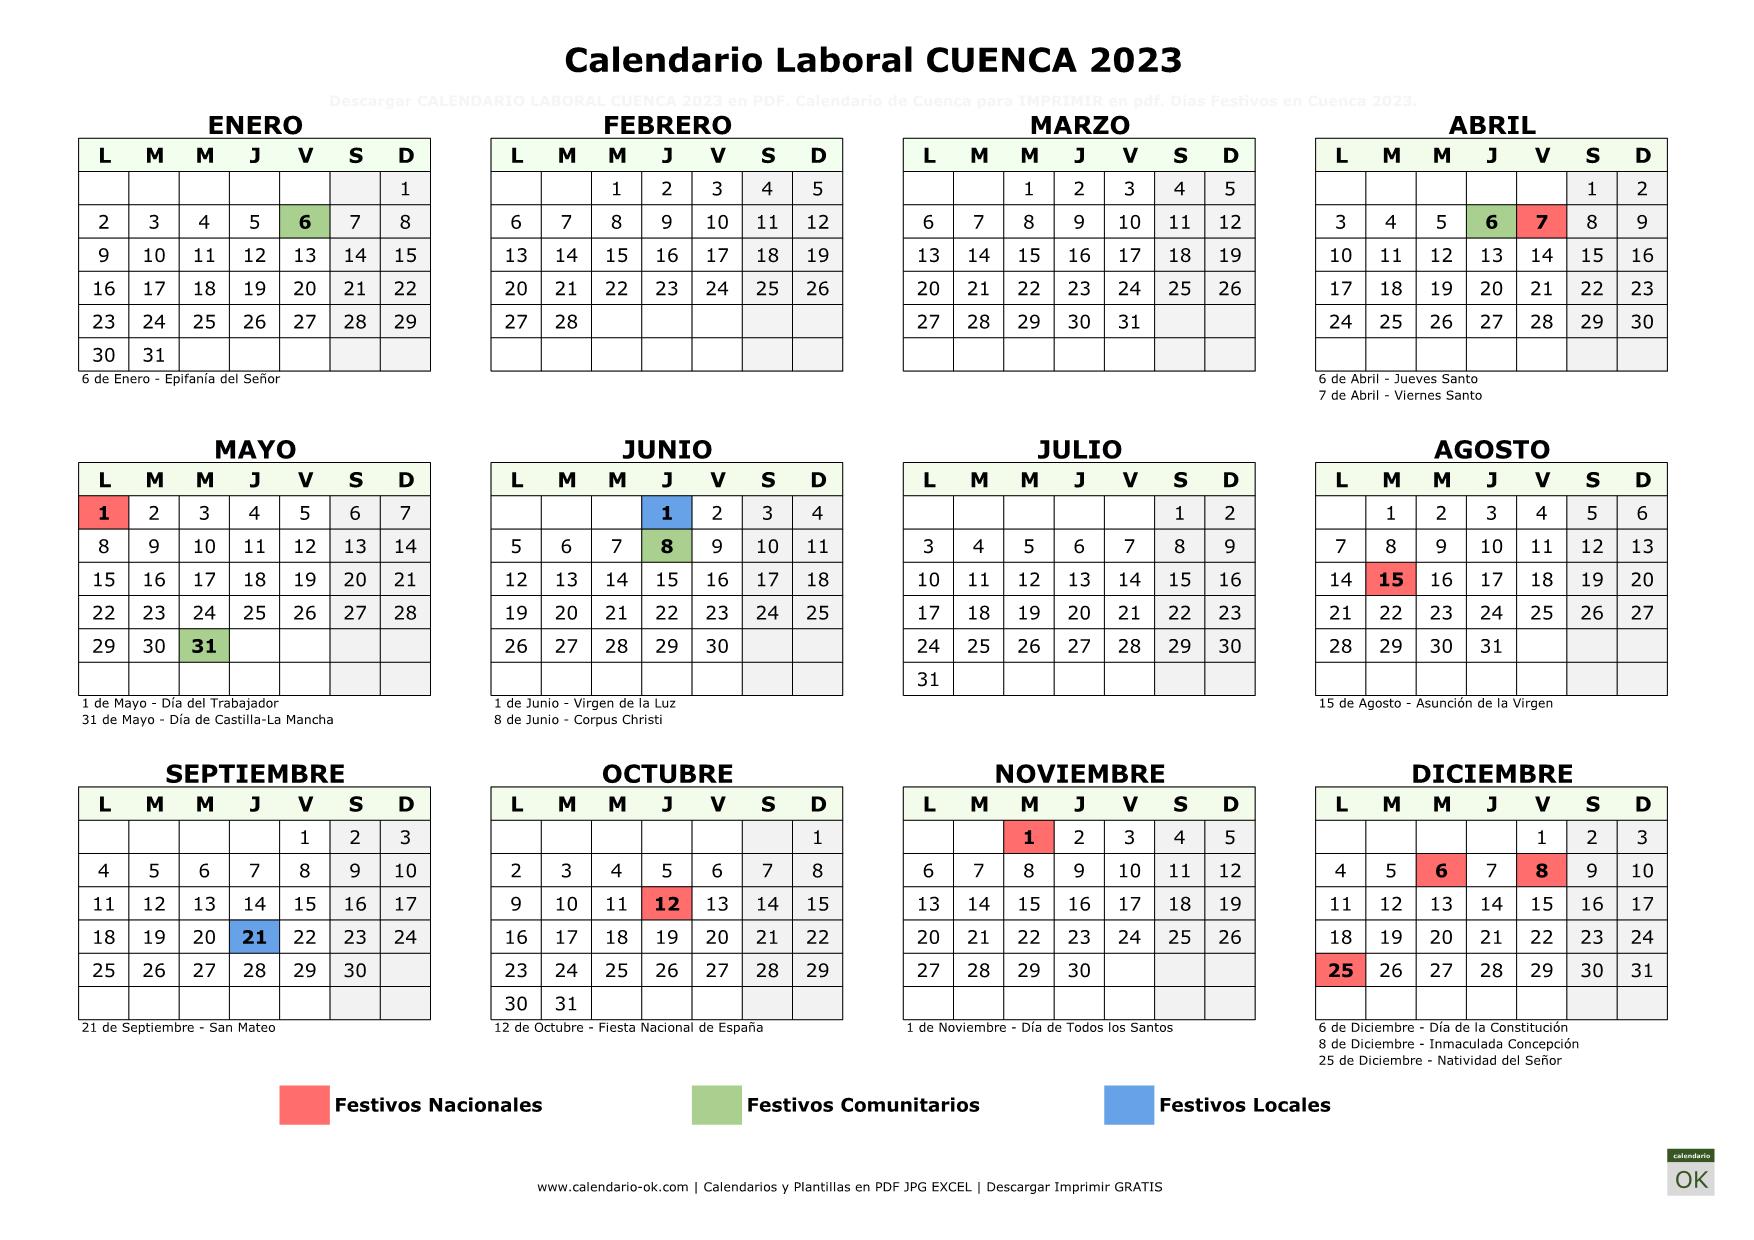 Calendario Laboral Cuenca 2023 horizontal